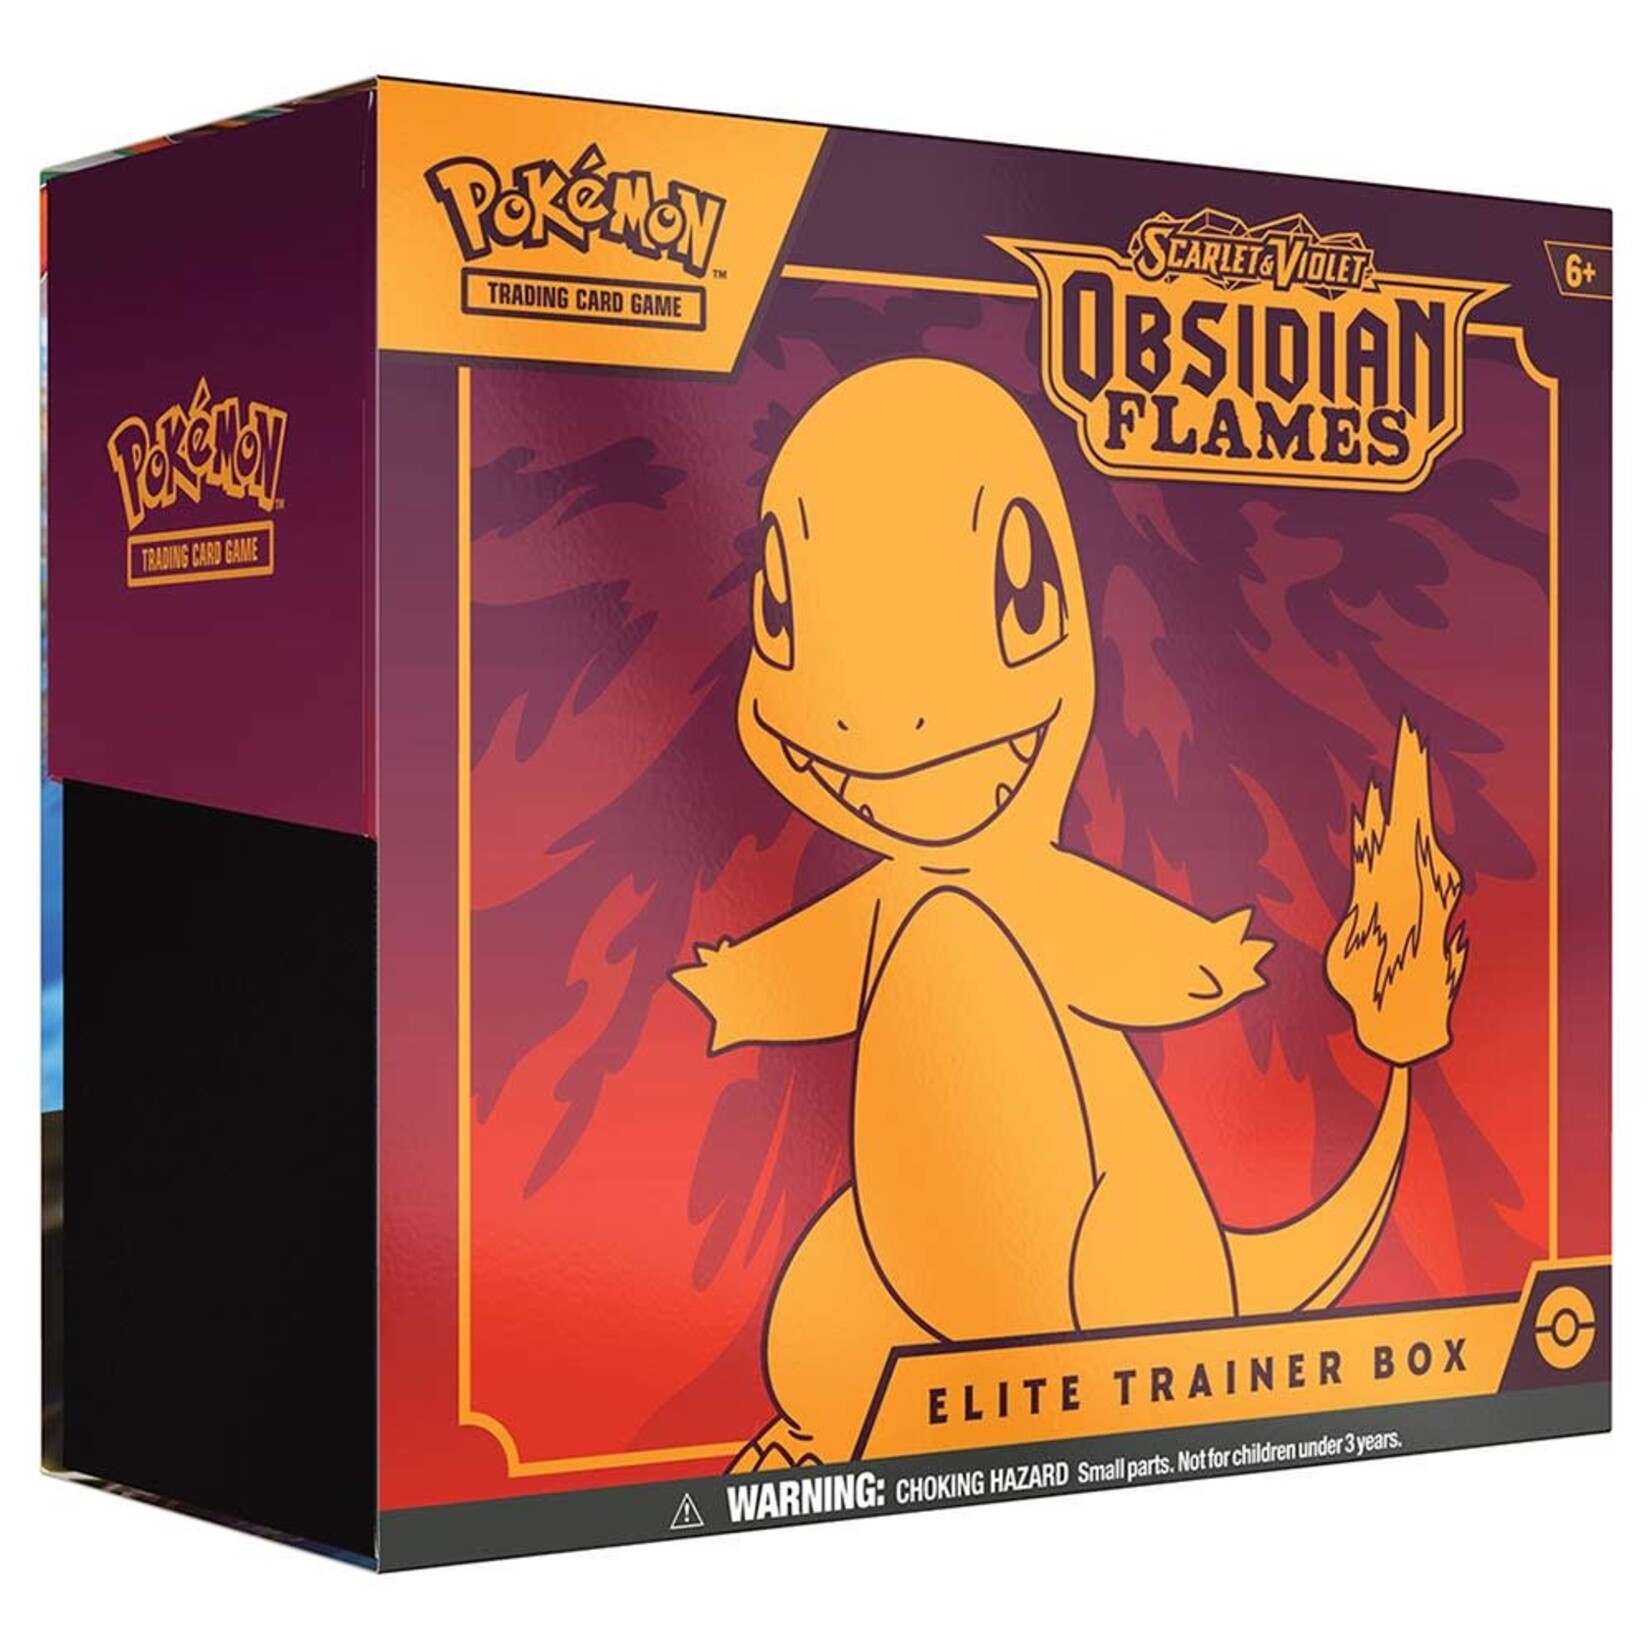 Pokémon Pokemon - Obsidian Flames Elite Trainer Box